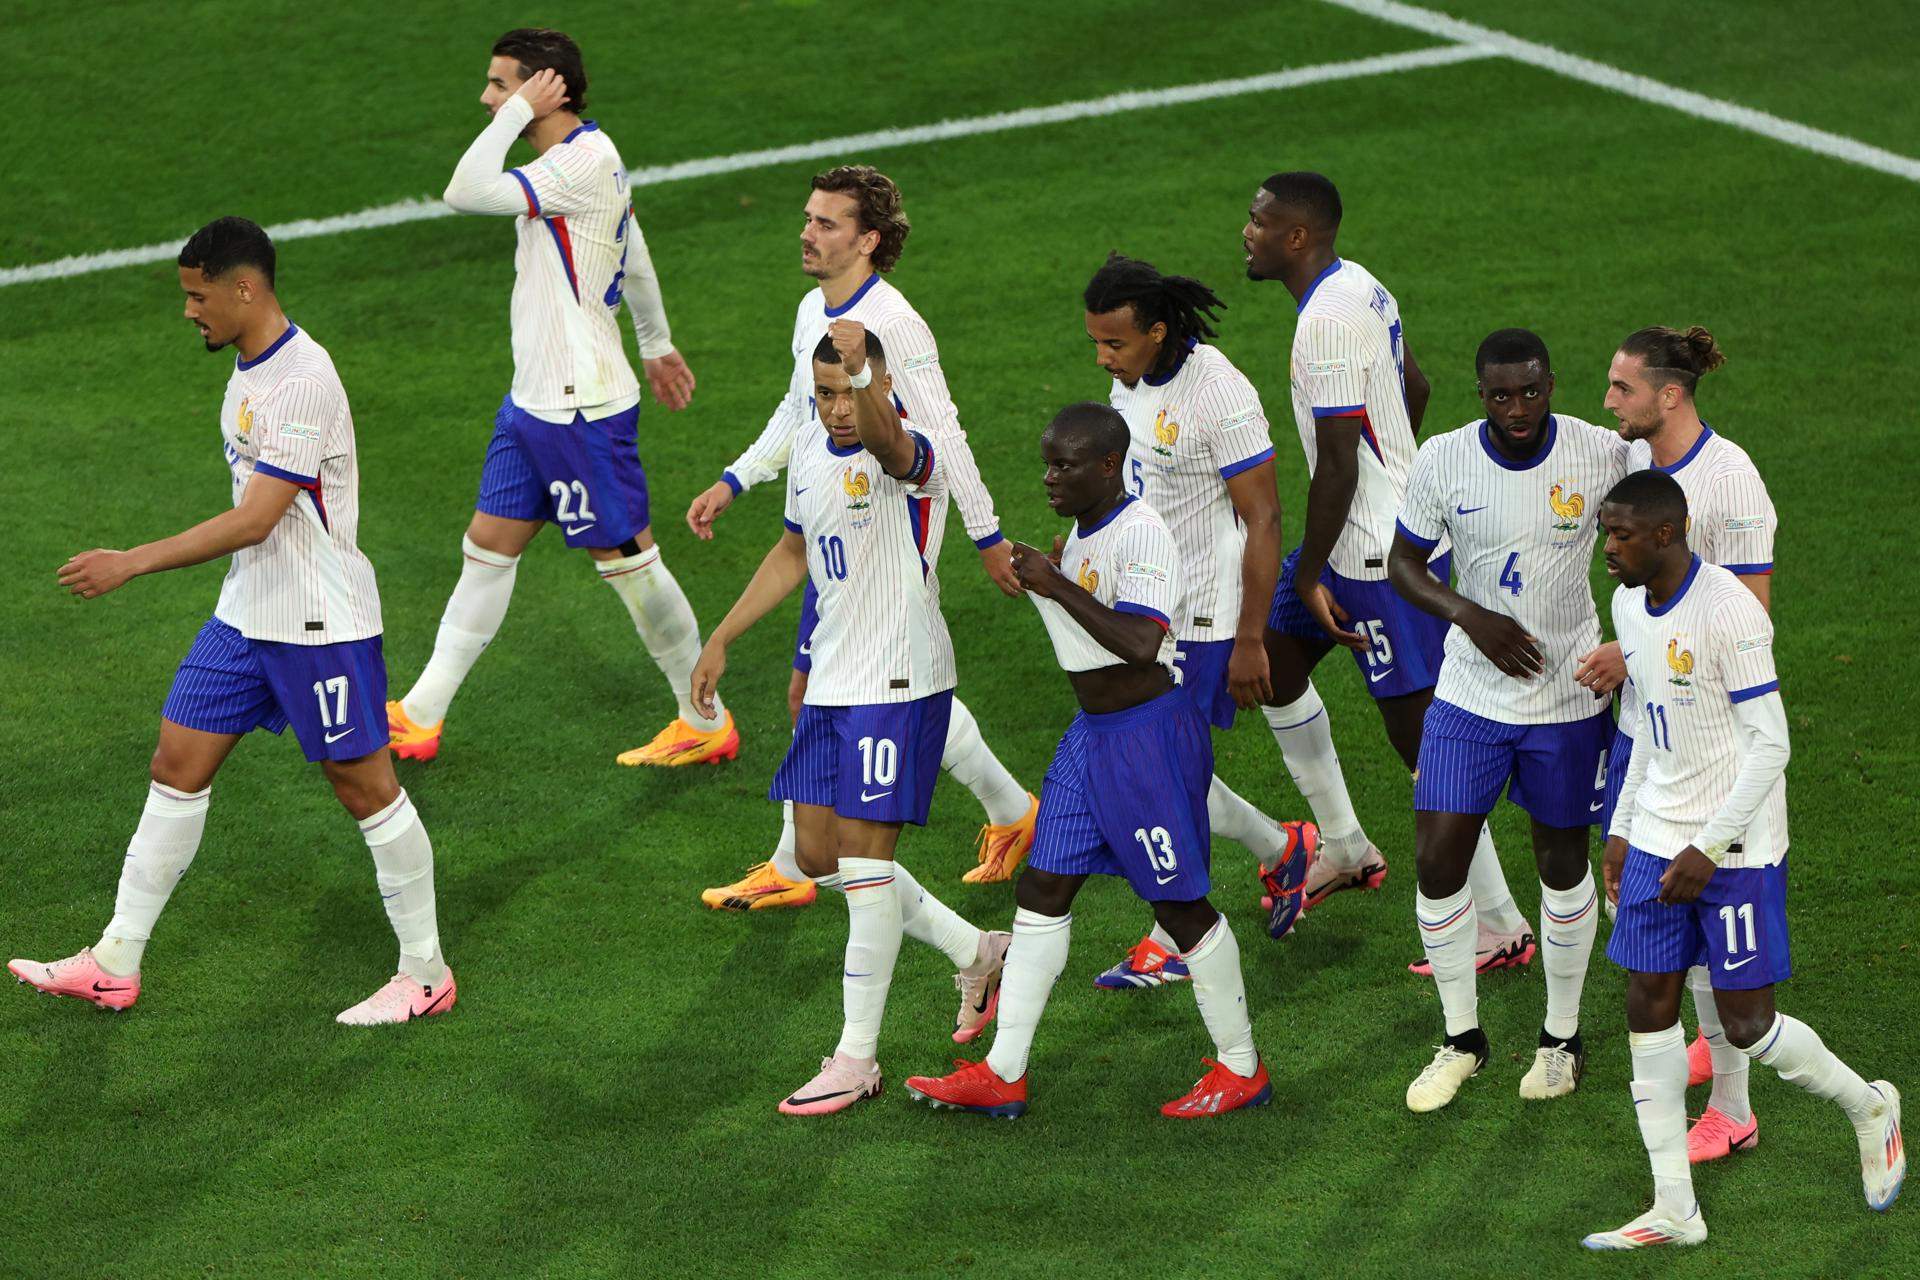 Francia debuta con una accidentada victoria contra una Austria que ha merecido más (0-1)